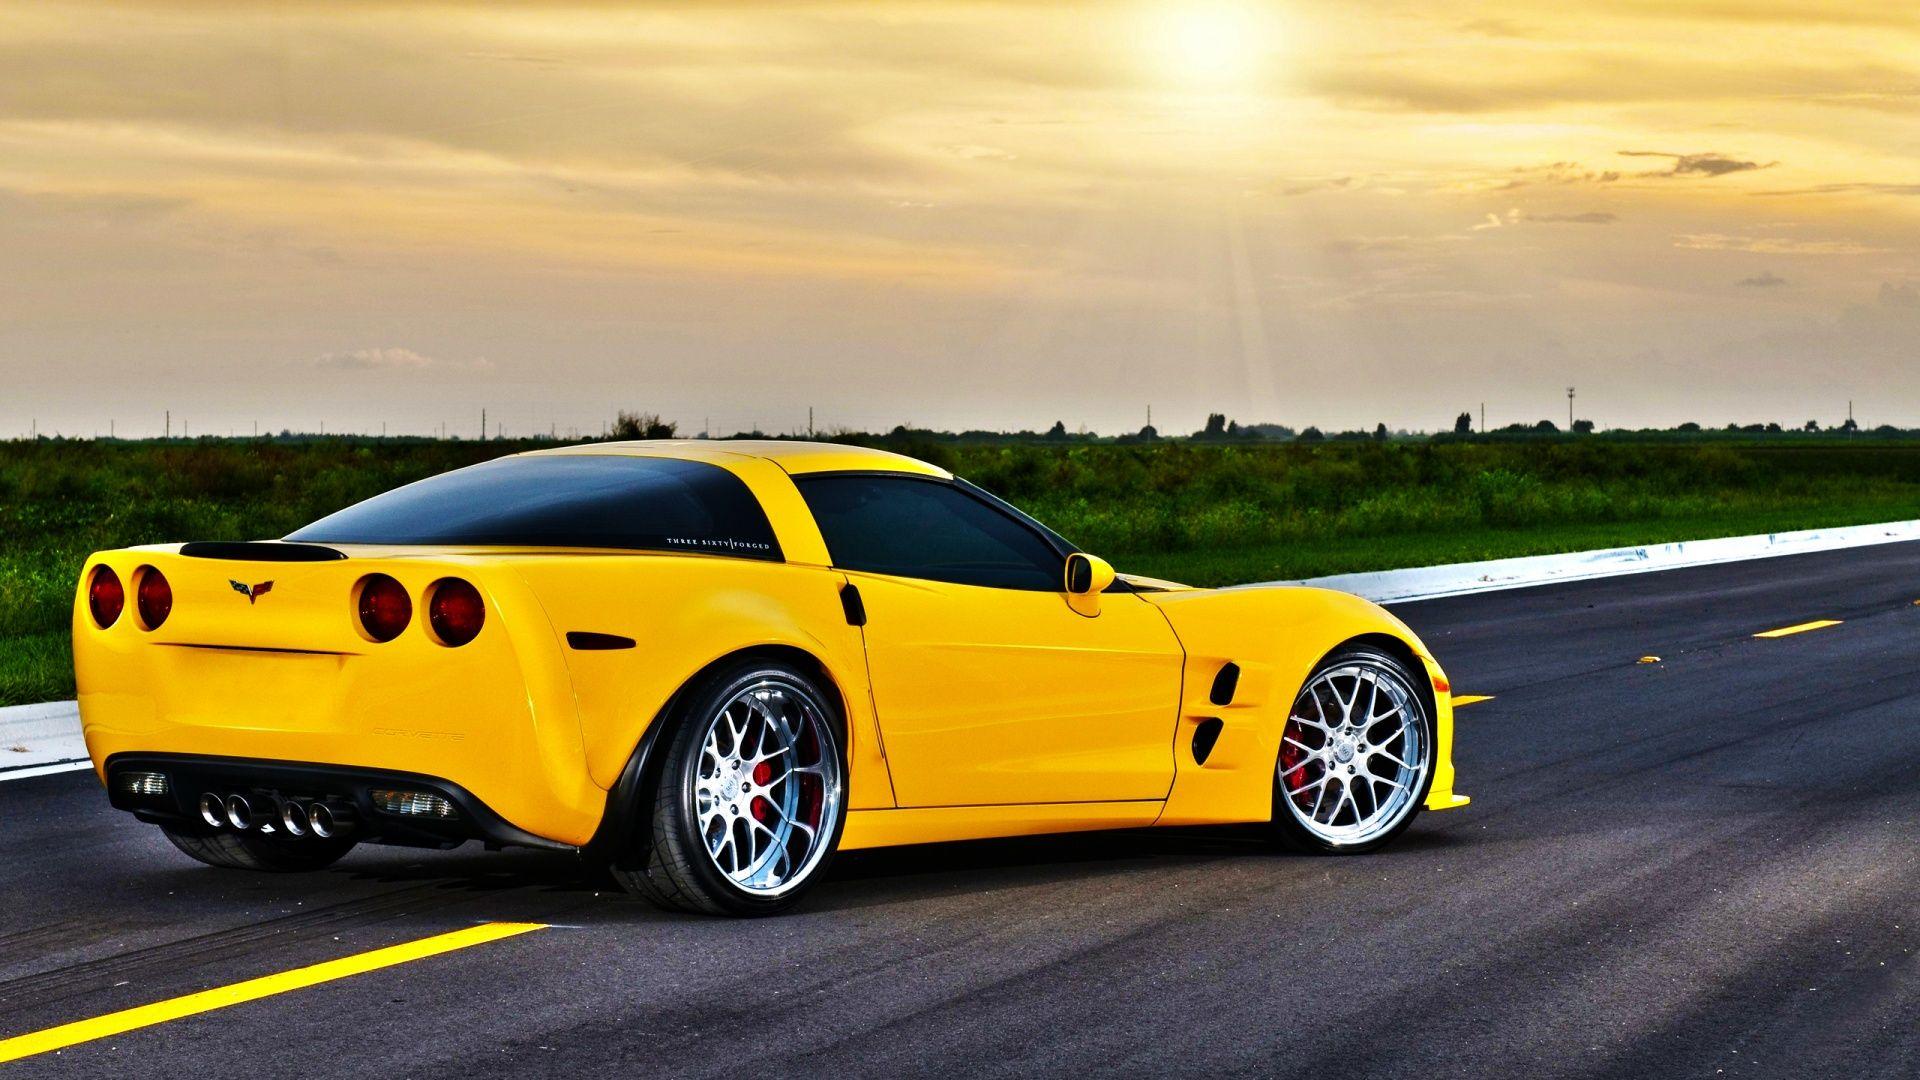 Free HD Corvette Wallpaper